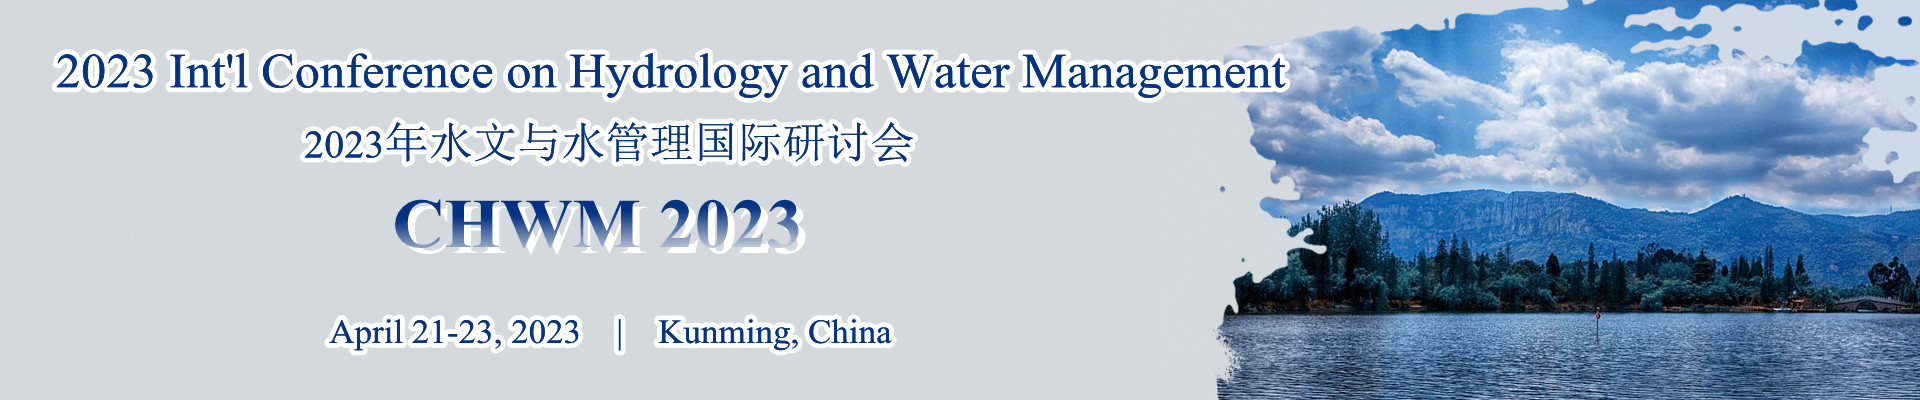 2023年水文与水管理国际研讨会(CHWM 2023)